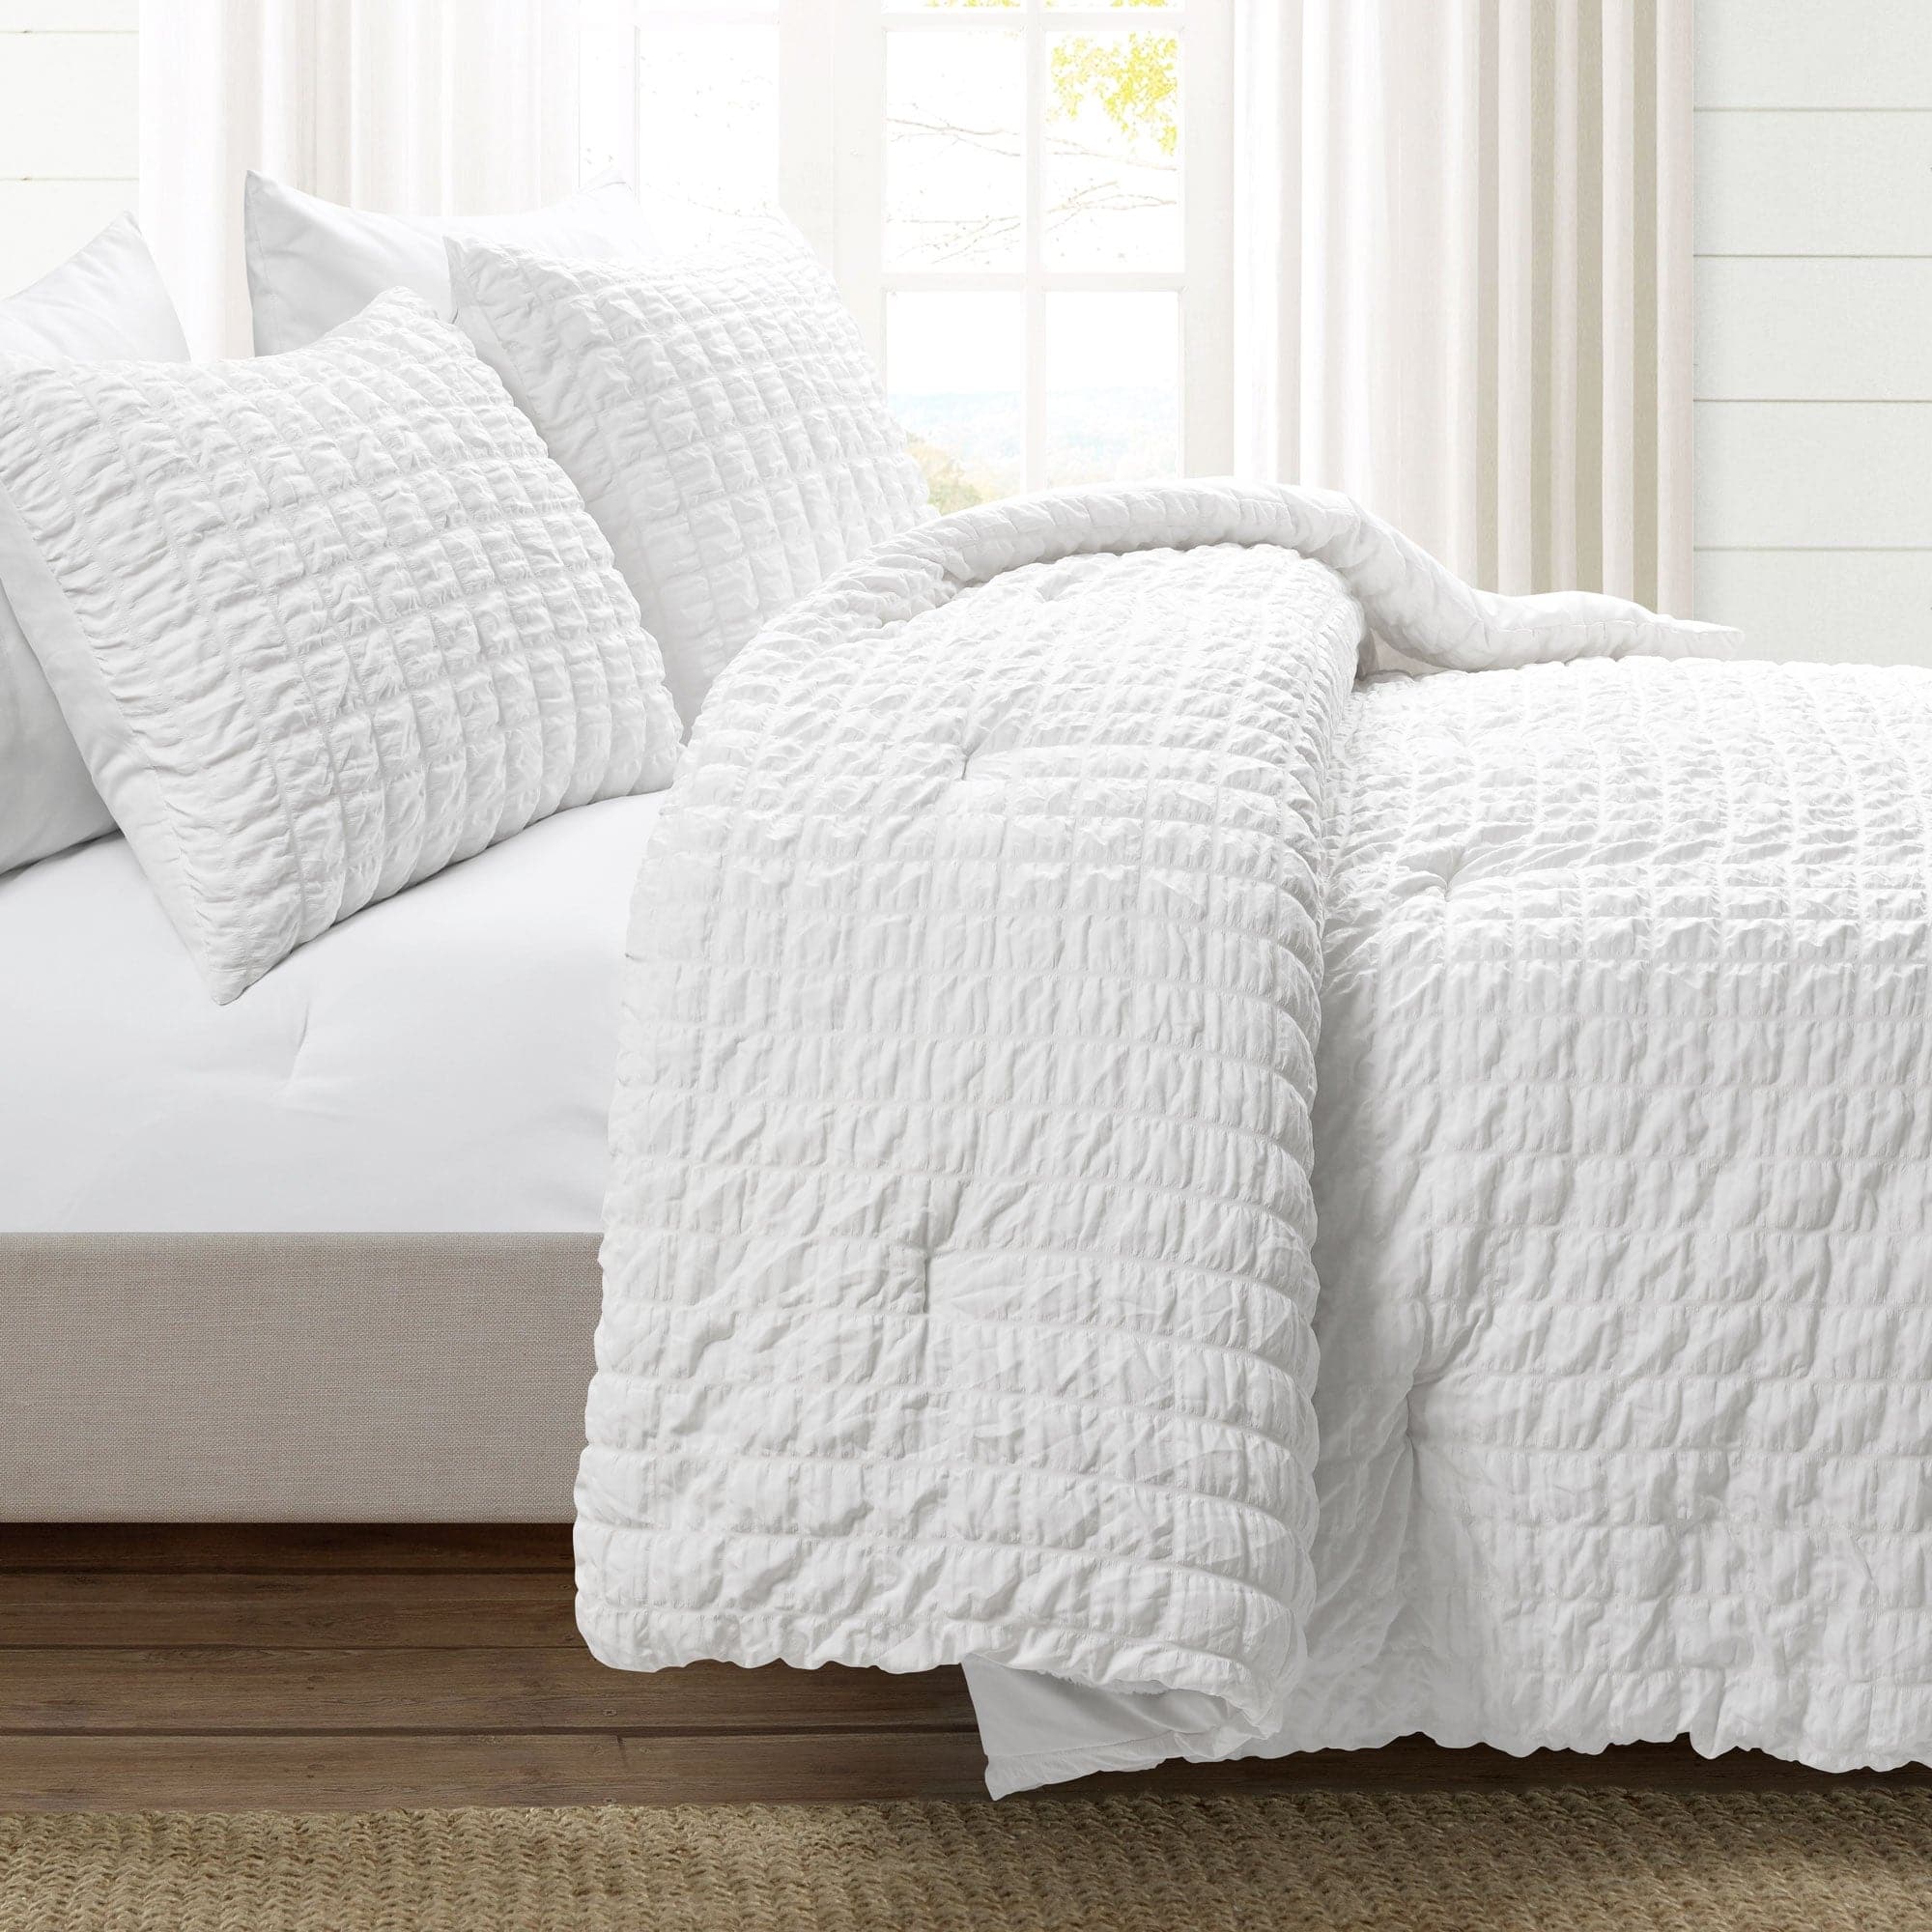 Crinkle Textured Dobby Comforter Set, Lush Decor